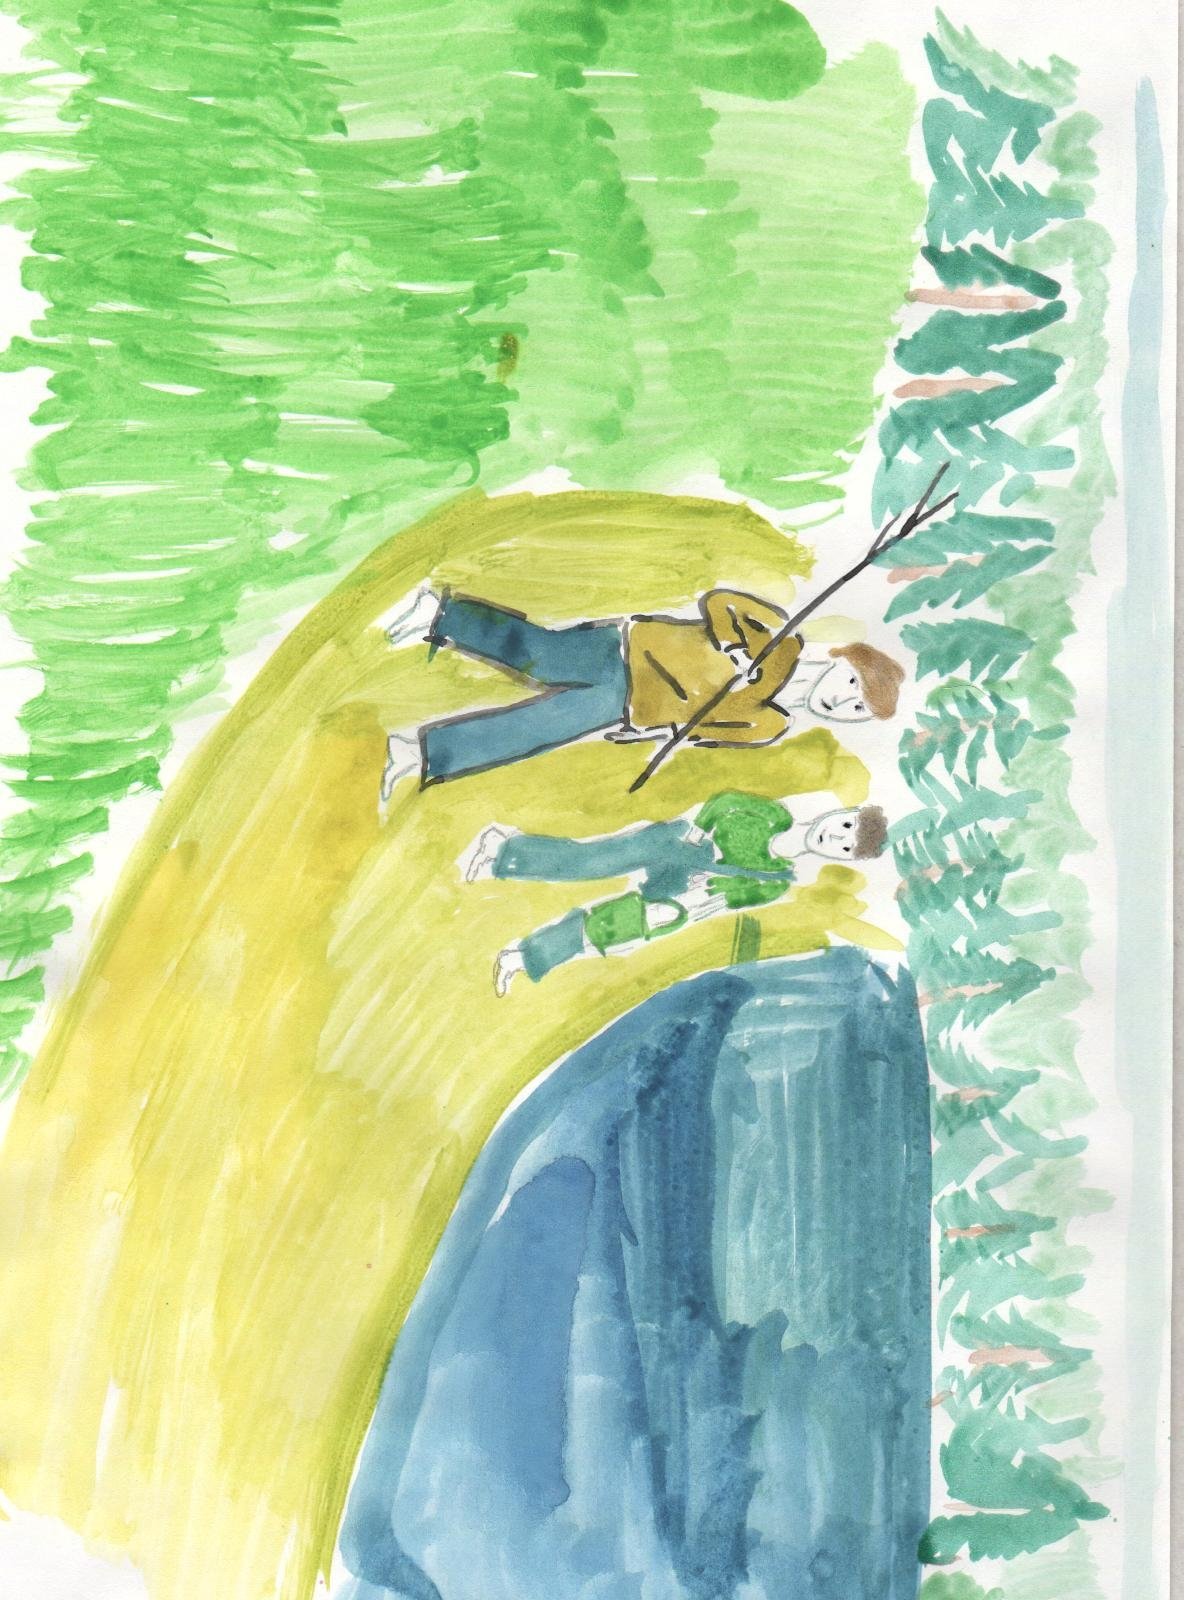 Рисунок к эпизоду васюткино озеро. Иллюстрация к рассказу Васюткино озеро. Иллюстрация Васюткино озеро 5 класс. Иллюстрация к рассказу Васюткино озеро 5 класс карандашом. Иллюстрация к сказке Васюткино озеро 5 класс.